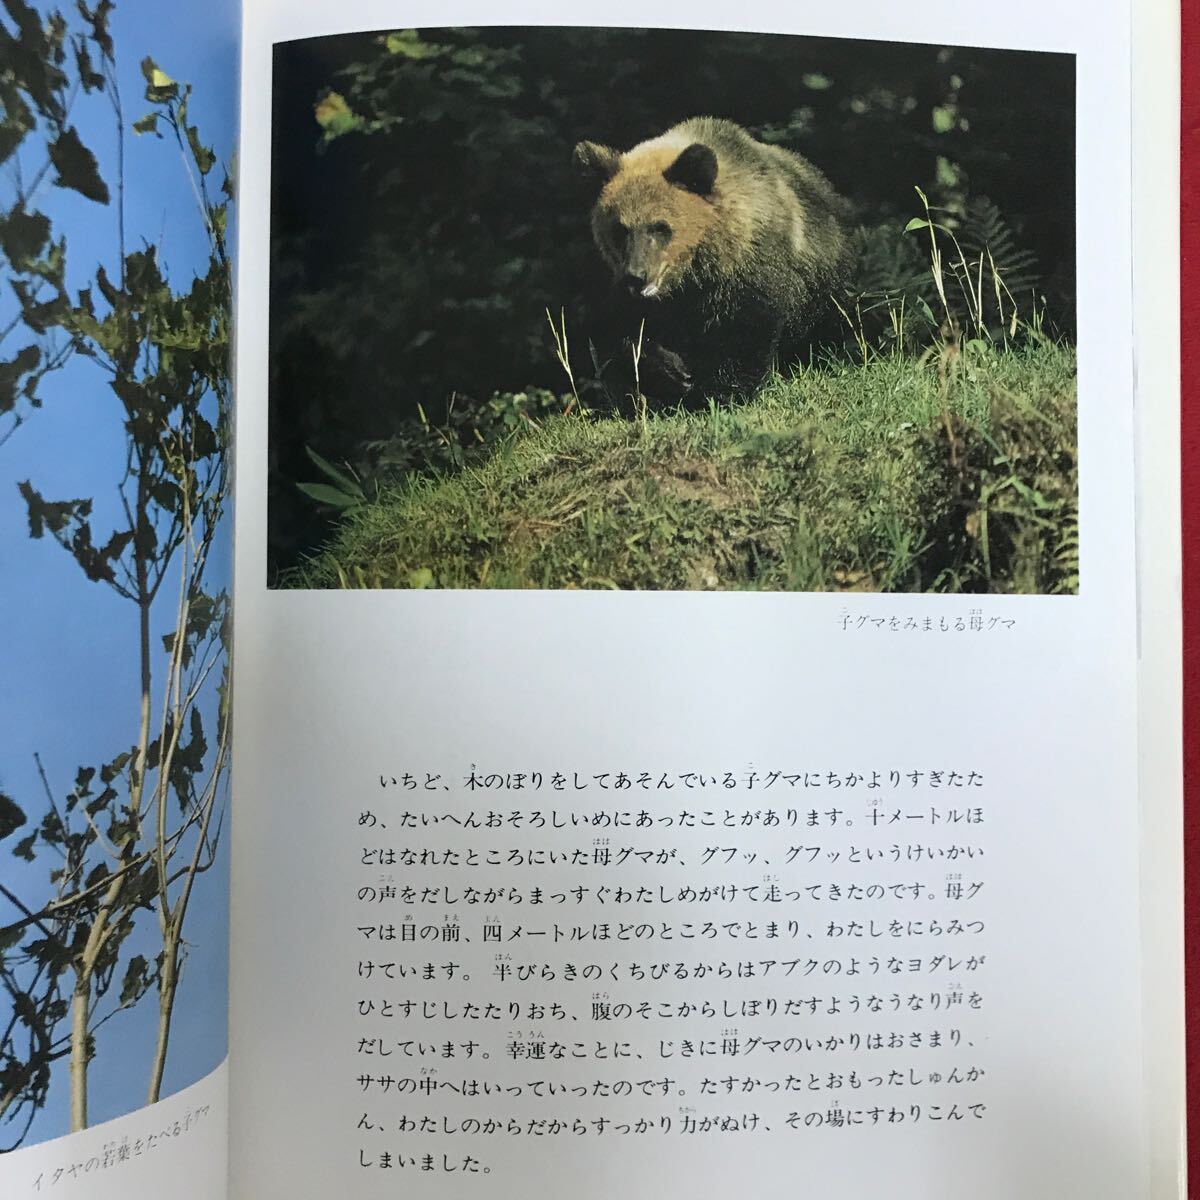 h-686 ※9 / 写真絵本 ヒグマの四季 著者:富士元寿彦 1981年10月25日第1刷 四季おりおりのヒグマの行動 熊 写真 寒さに強い_画像2